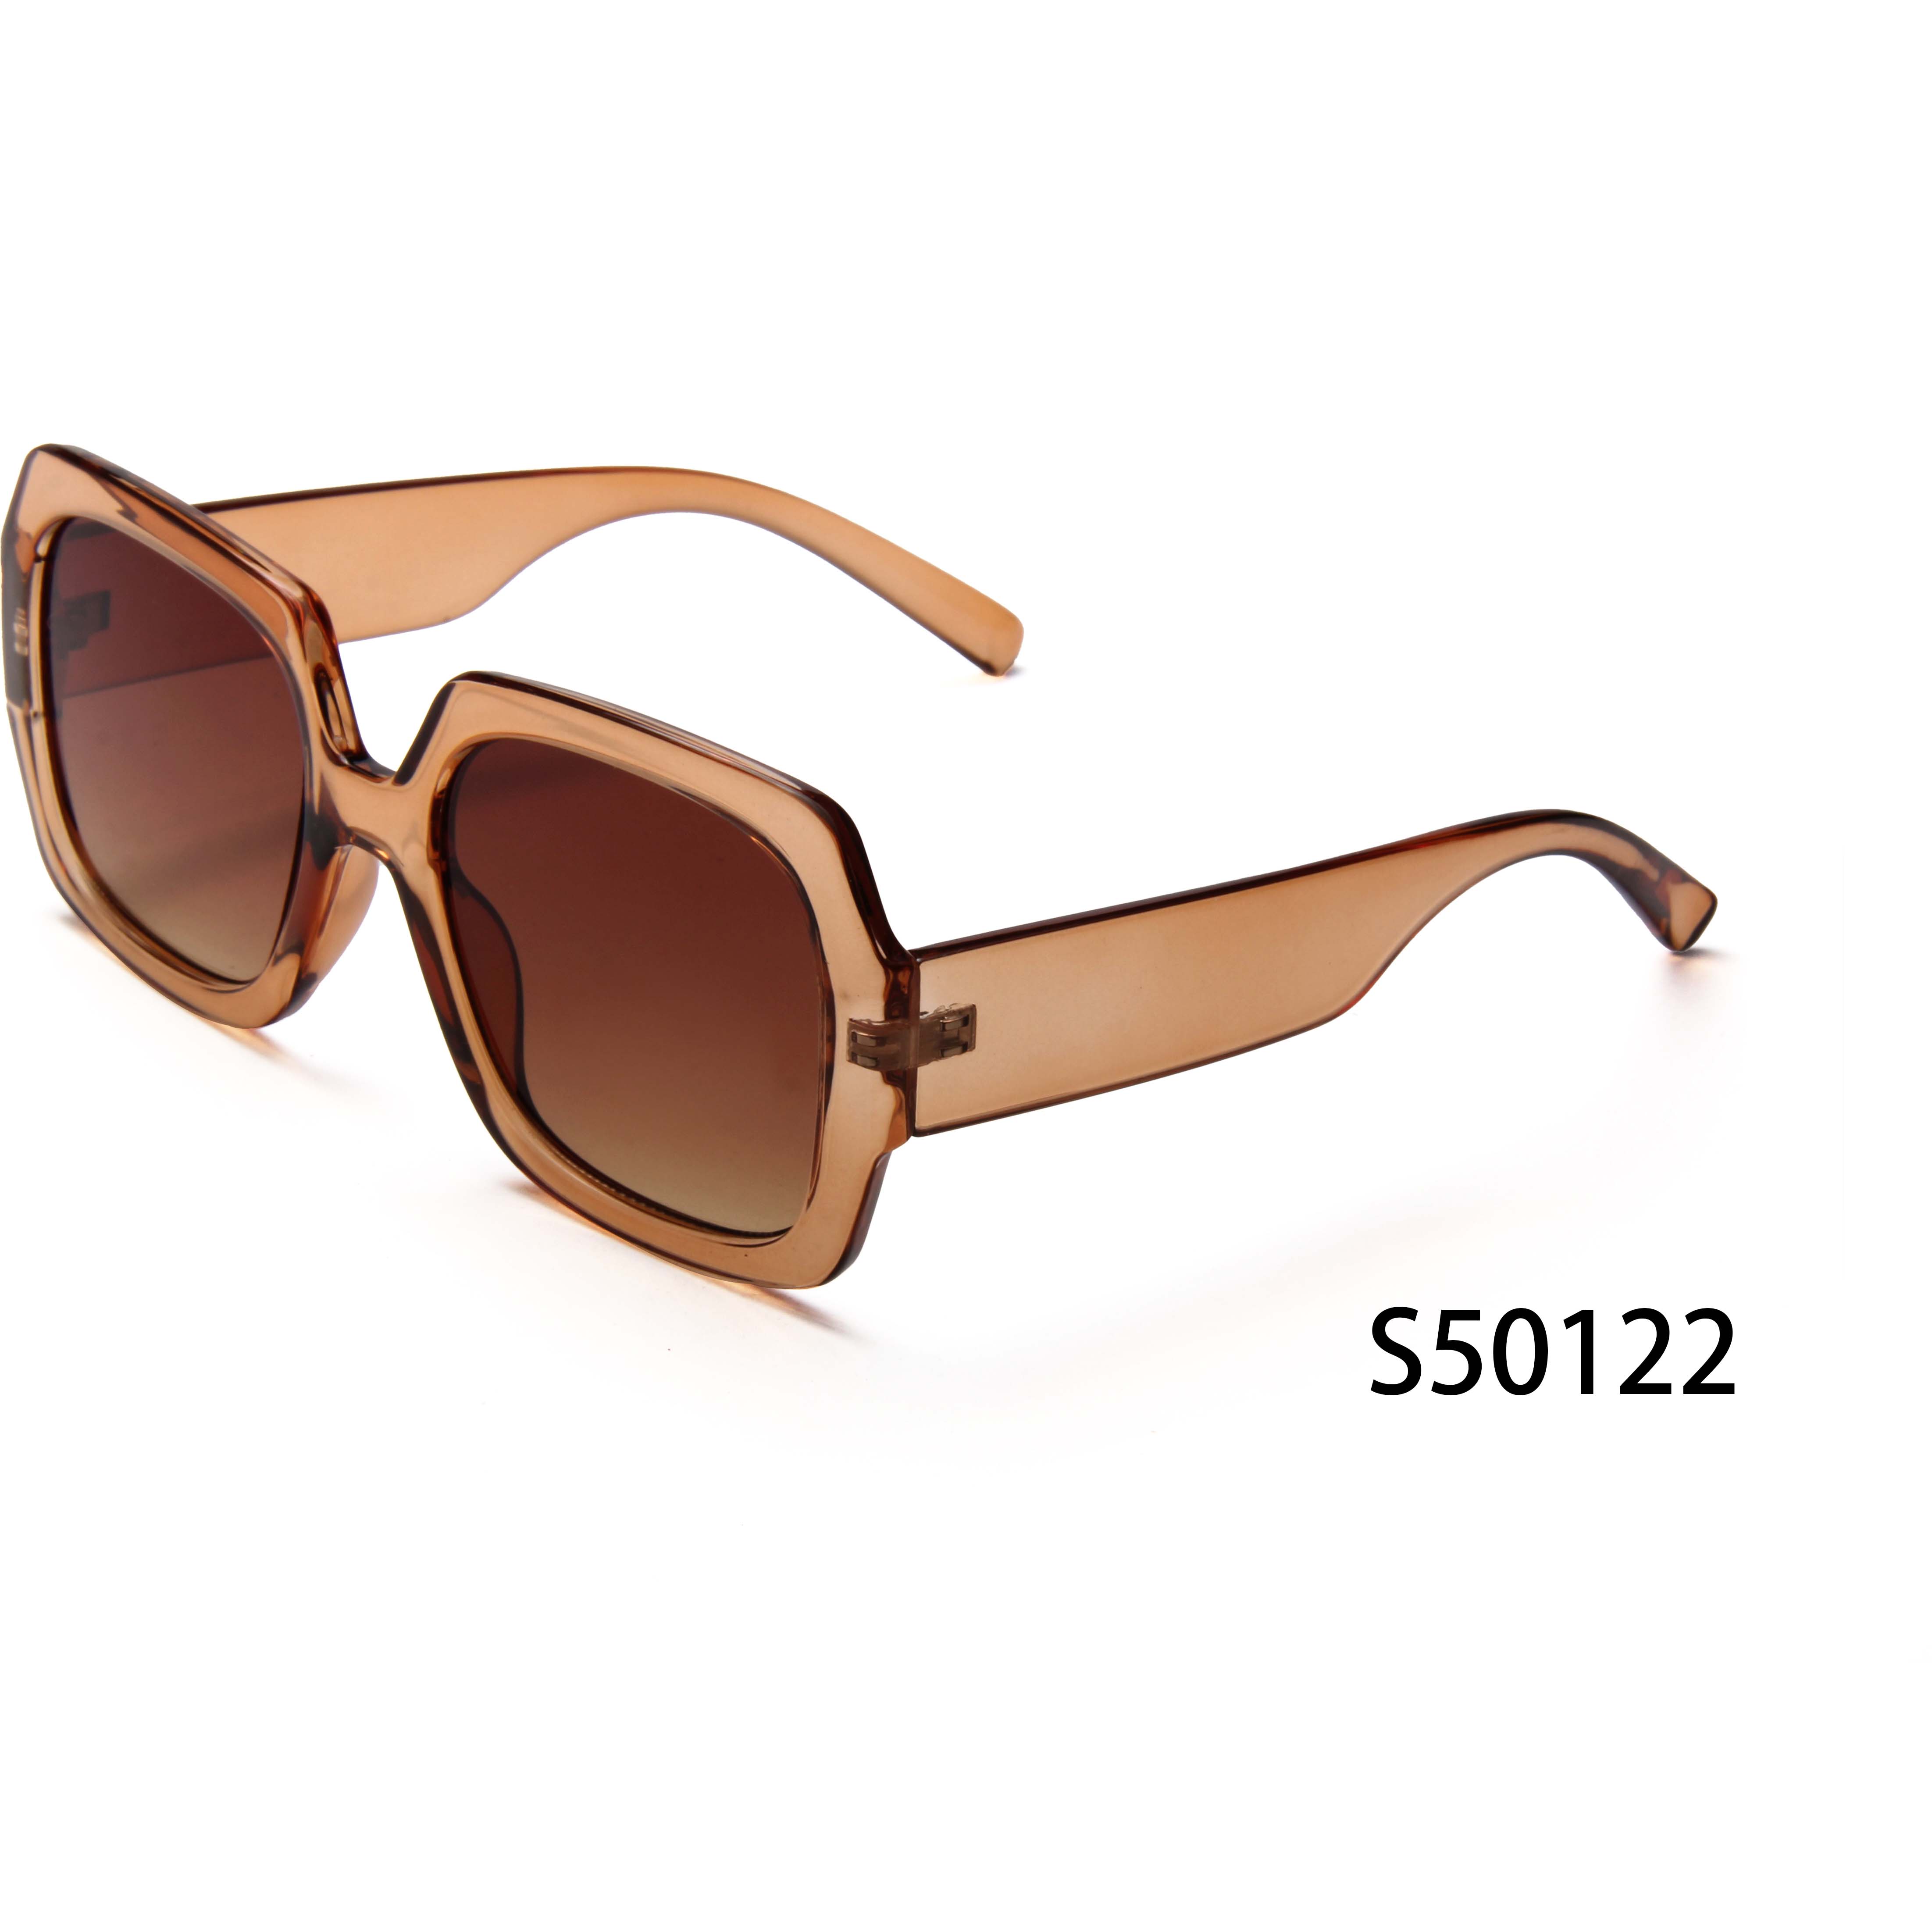 S50122 Gafas de sol cuadradas de gran tamaño Vintage para mujer, gafas de sol de aleación de marca de lujo a la moda en negro y marrón, gafas de sol elegantes para mujer y hombre